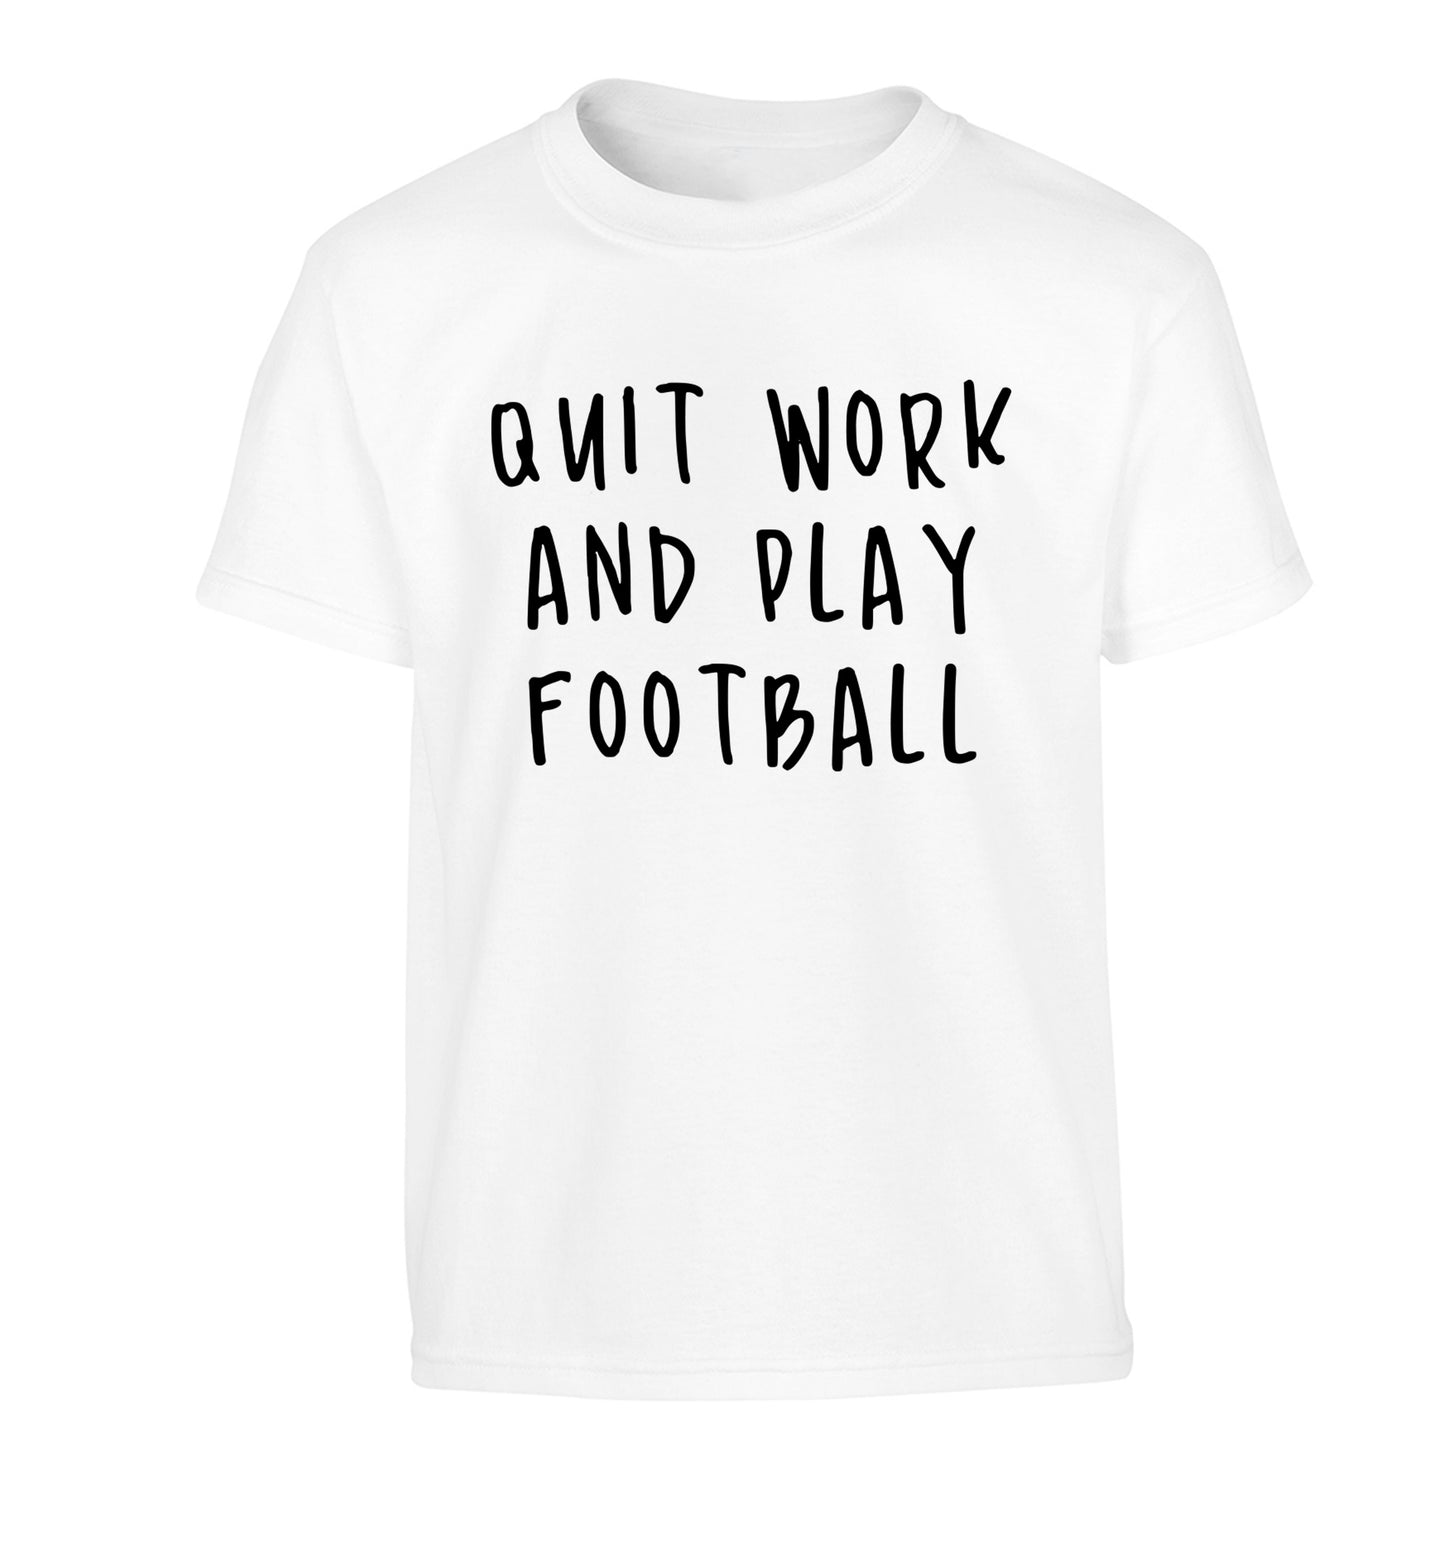 Quit work play football Children's white Tshirt 12-14 Years